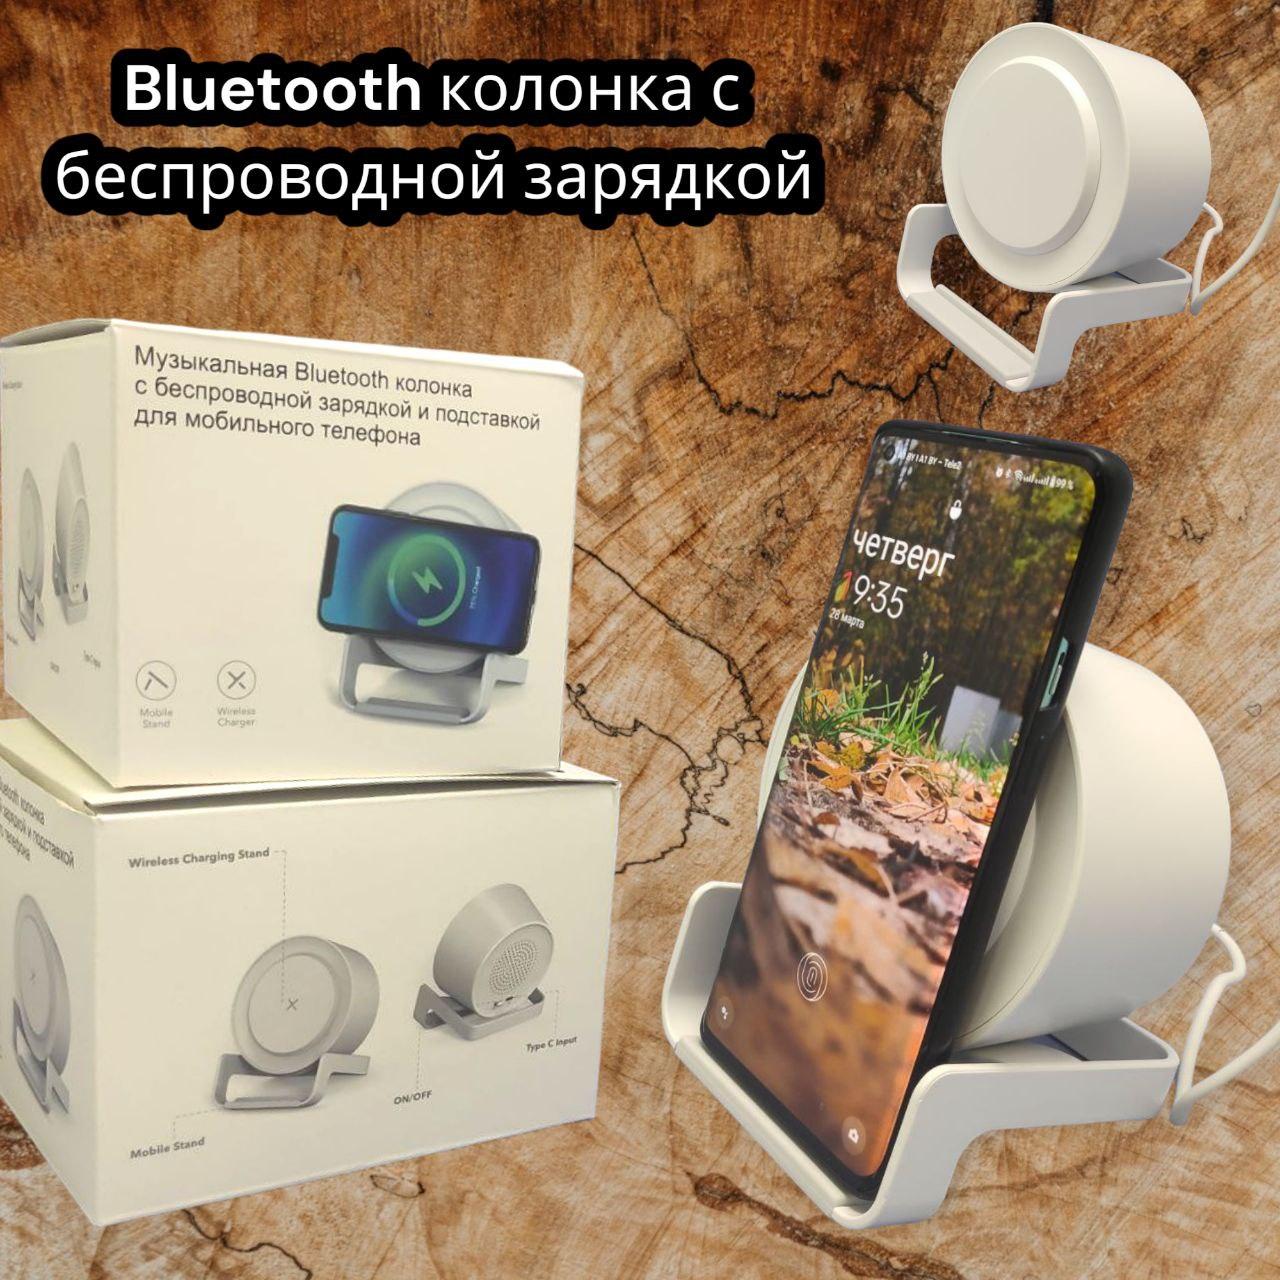 Беспроводная Bluetooth колонка c функцией беспроводной зарядки и подставкой для смартфона, Белый